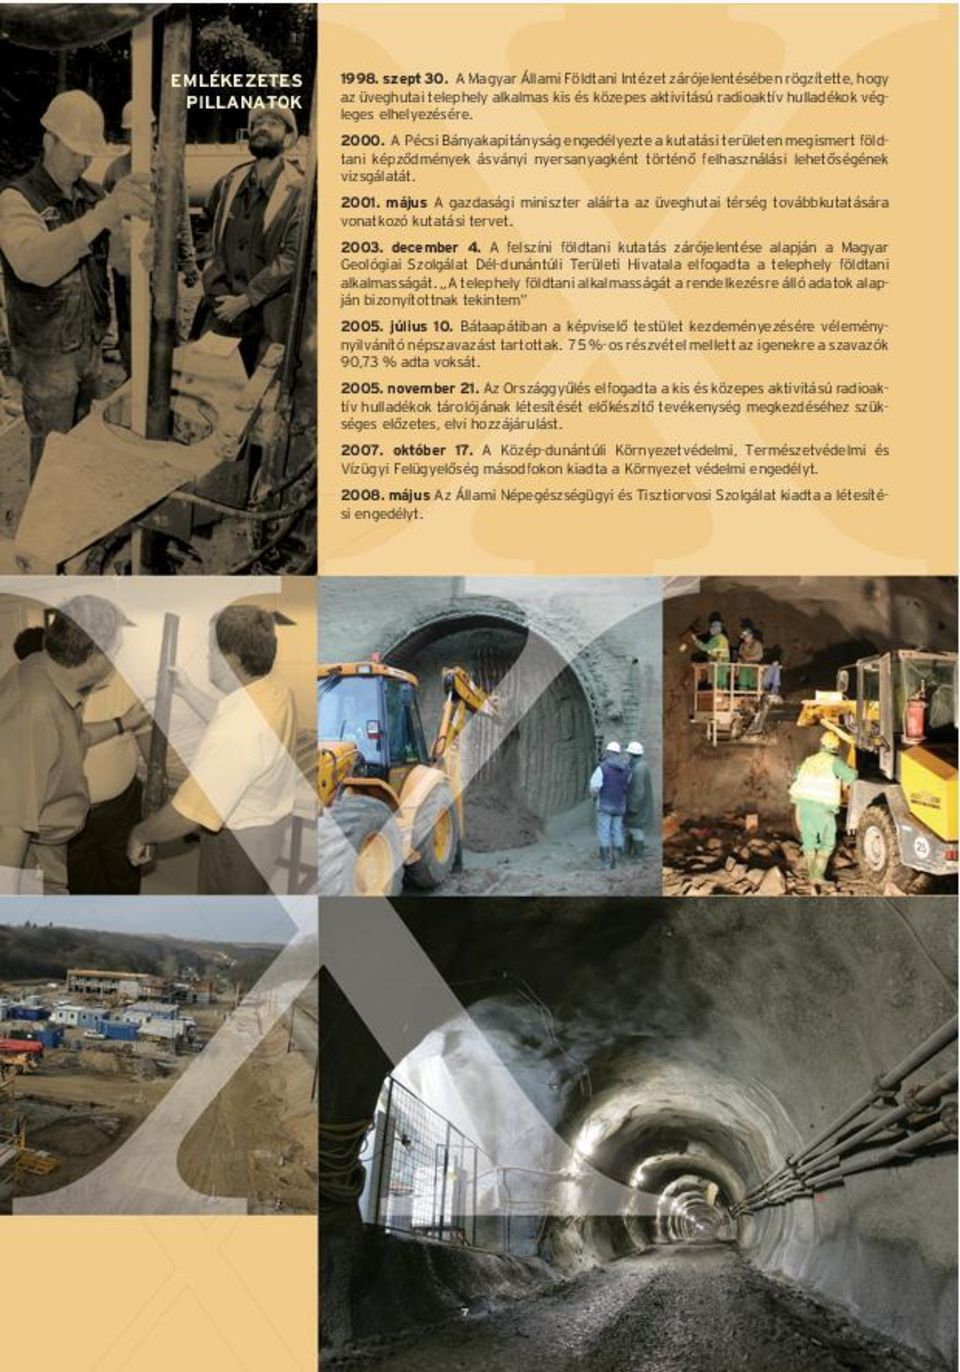 A Pécsi Bányakapitányság engedélyezte a kutatási területen megismert földtani képzõdmények ásványi nyersanyagként történõ felhasználási lehetõségének vizsgálatát. 2001.